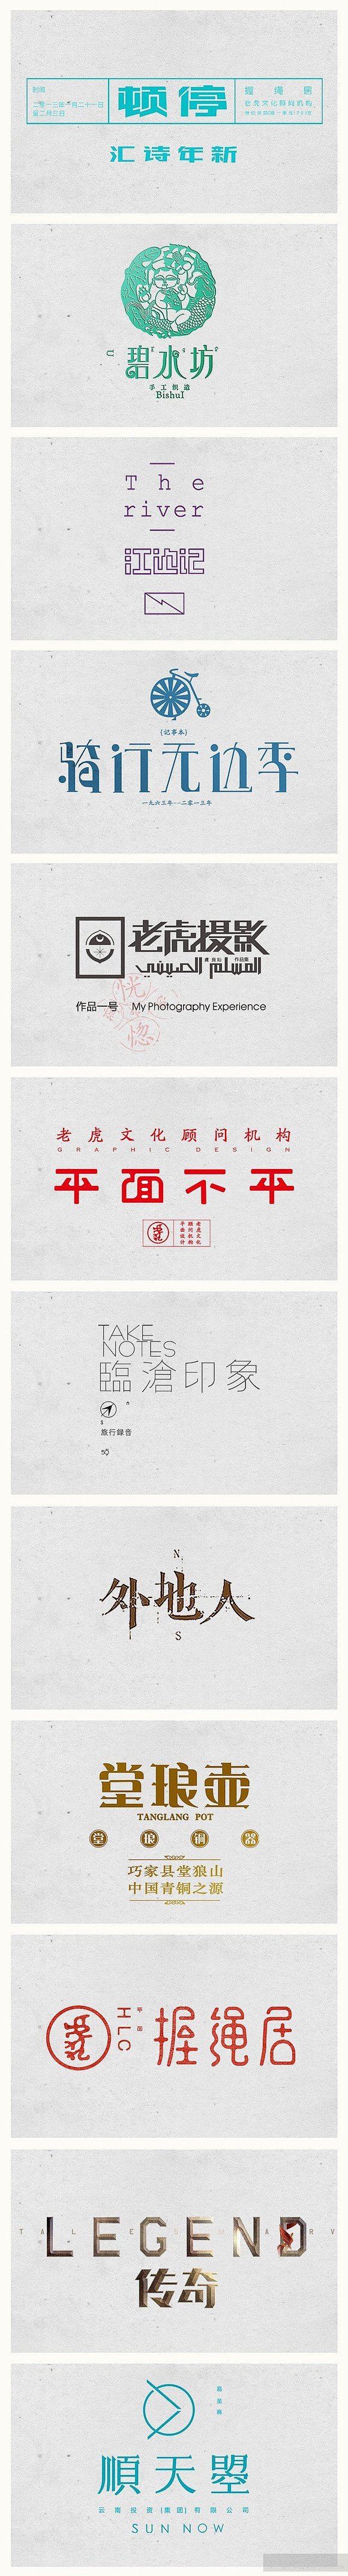 一组优秀中文字体设计欣赏